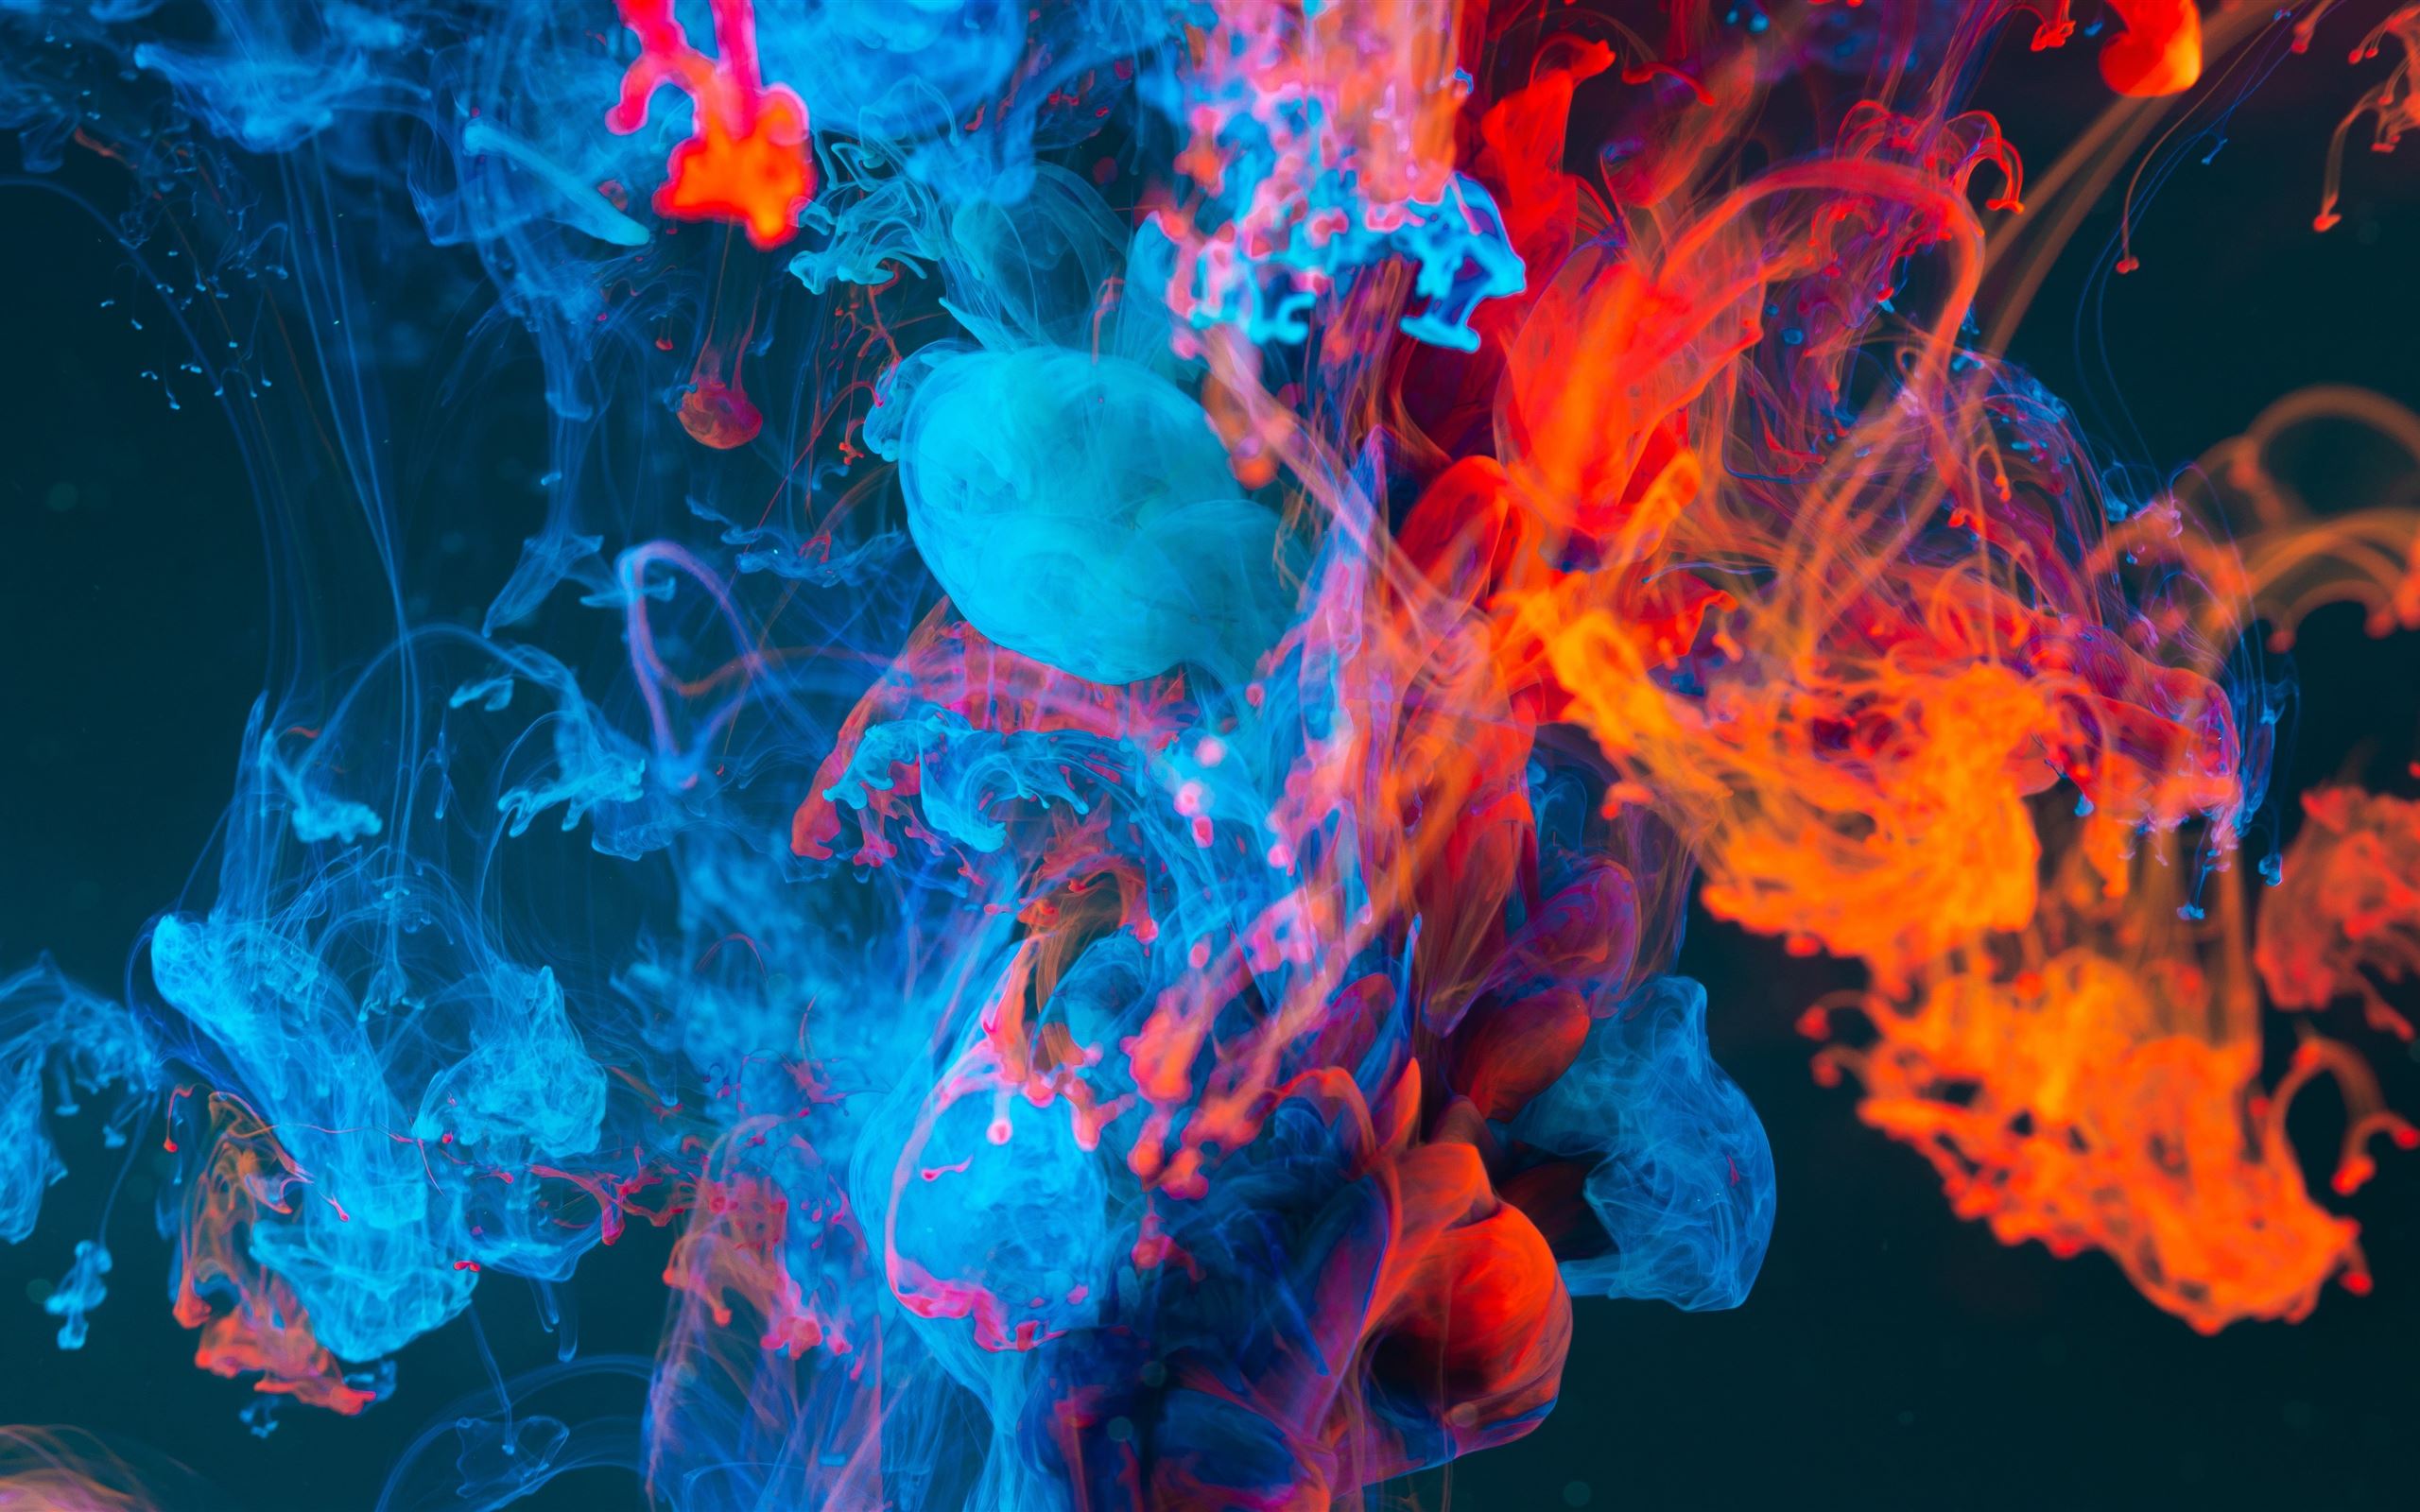 Cùng tận hưởng khói thuốc với tác phẩm nghệ thuật phức tạp - Abstract Smoke. Tham gia vào thế giới tường thuật đầy màu sắc này với hình ảnh độc đáo, phiêu lưu với những nếp gấp tinh tế và tận hưởng sự tinh tế của nghệ thuật.